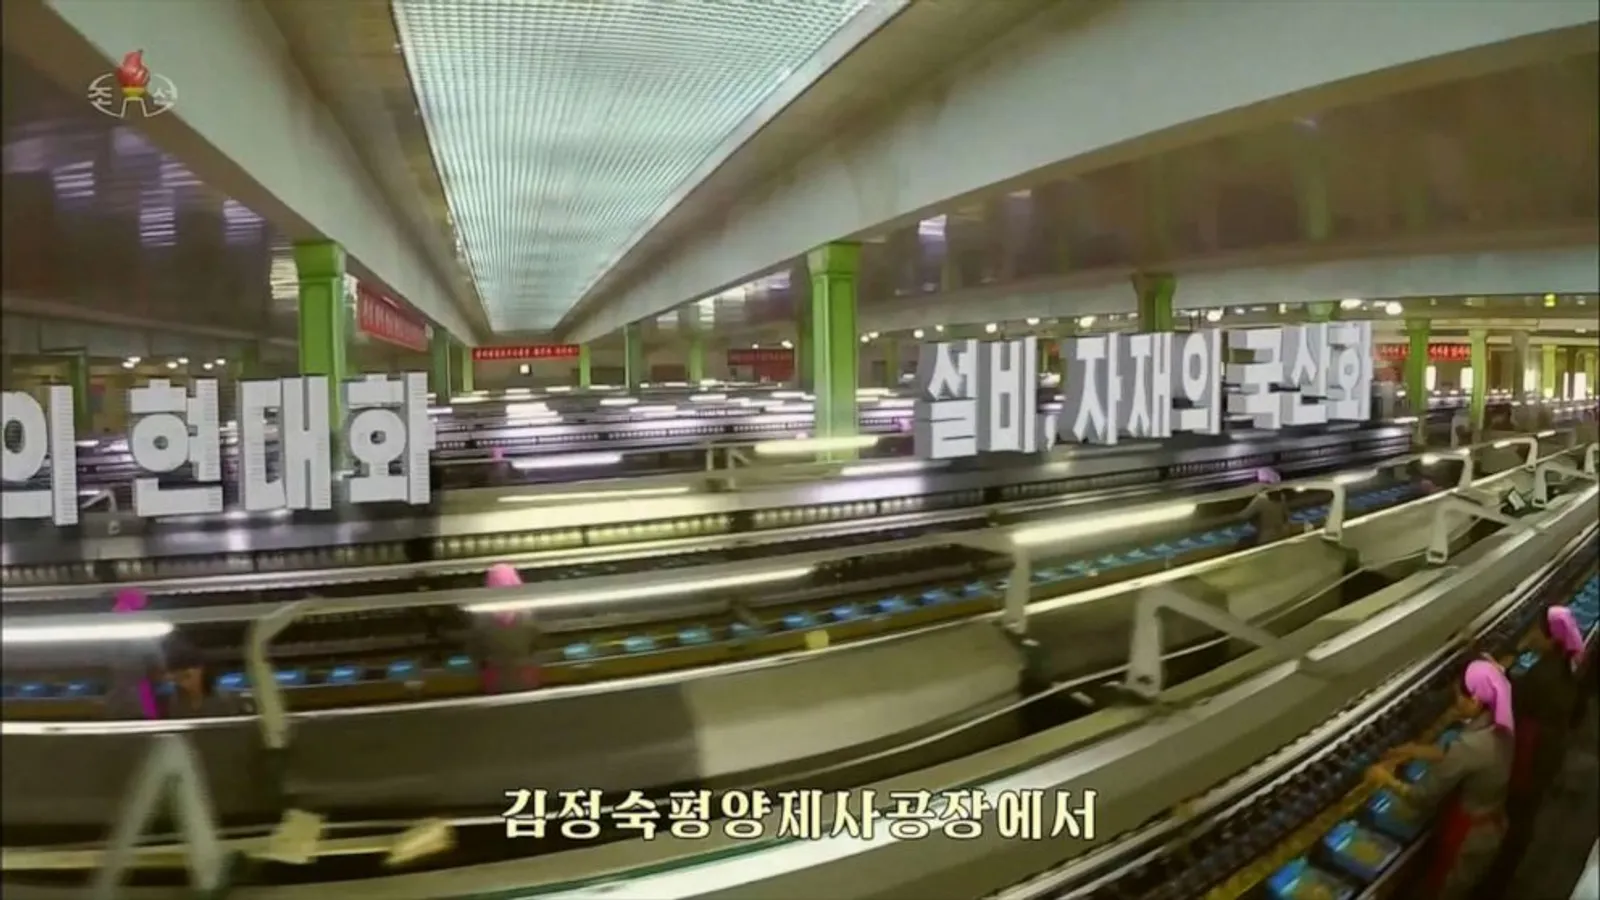 Lebih Modern dan Canggih, Ini 5 Tampilan Baru Televisi di Korea Utara